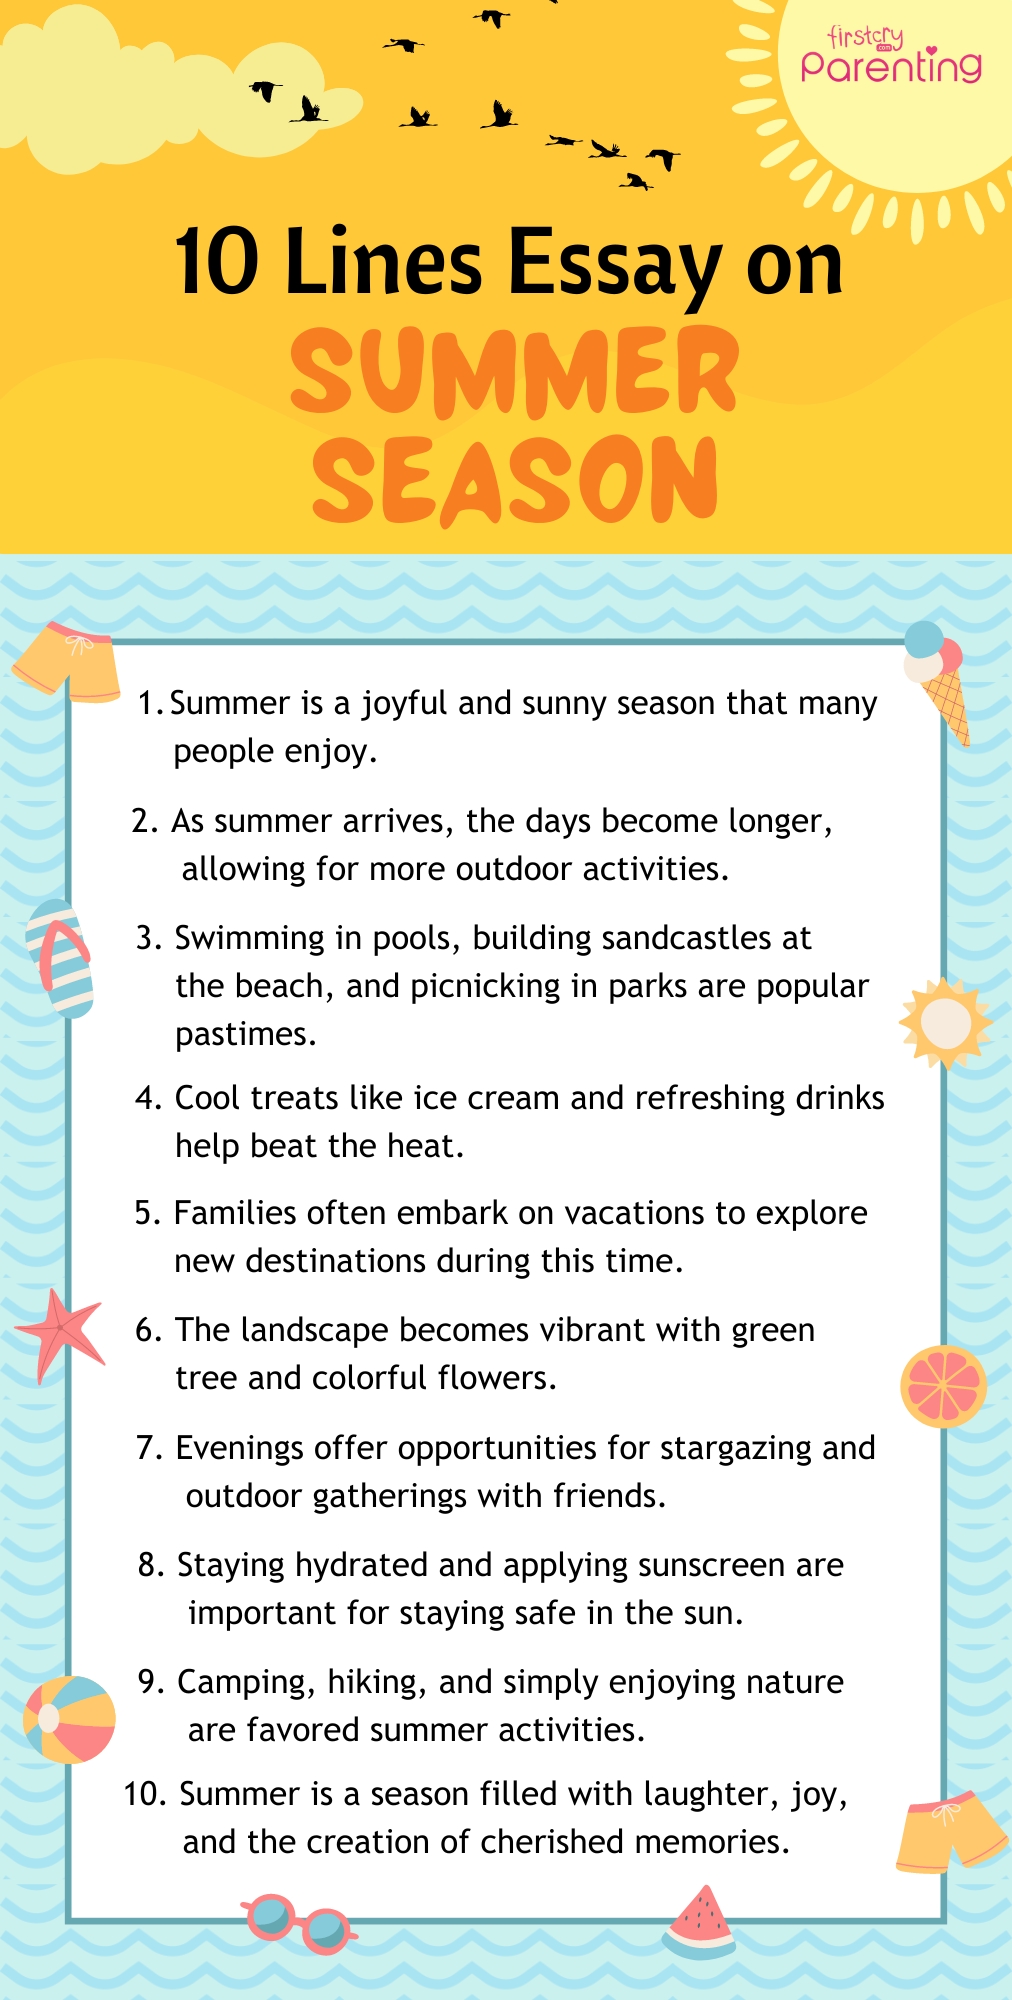 10 Lines Essay on Summer Season